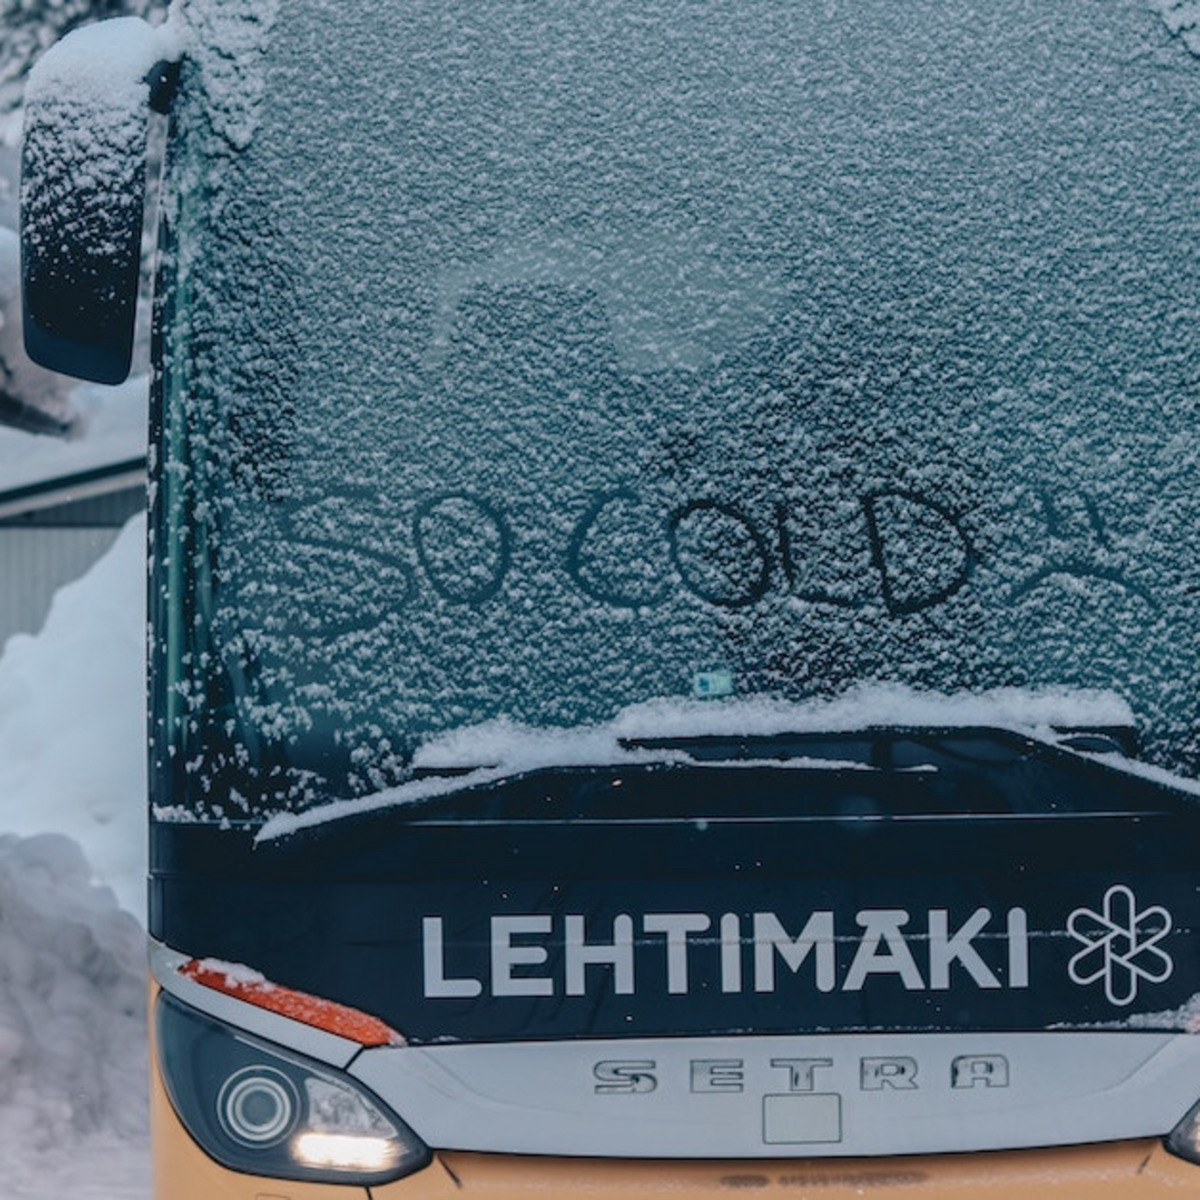 Jemand hat „So cold“ im Schnee geschrieben auf der Windschutzscheibe von einem finnischen Bus.